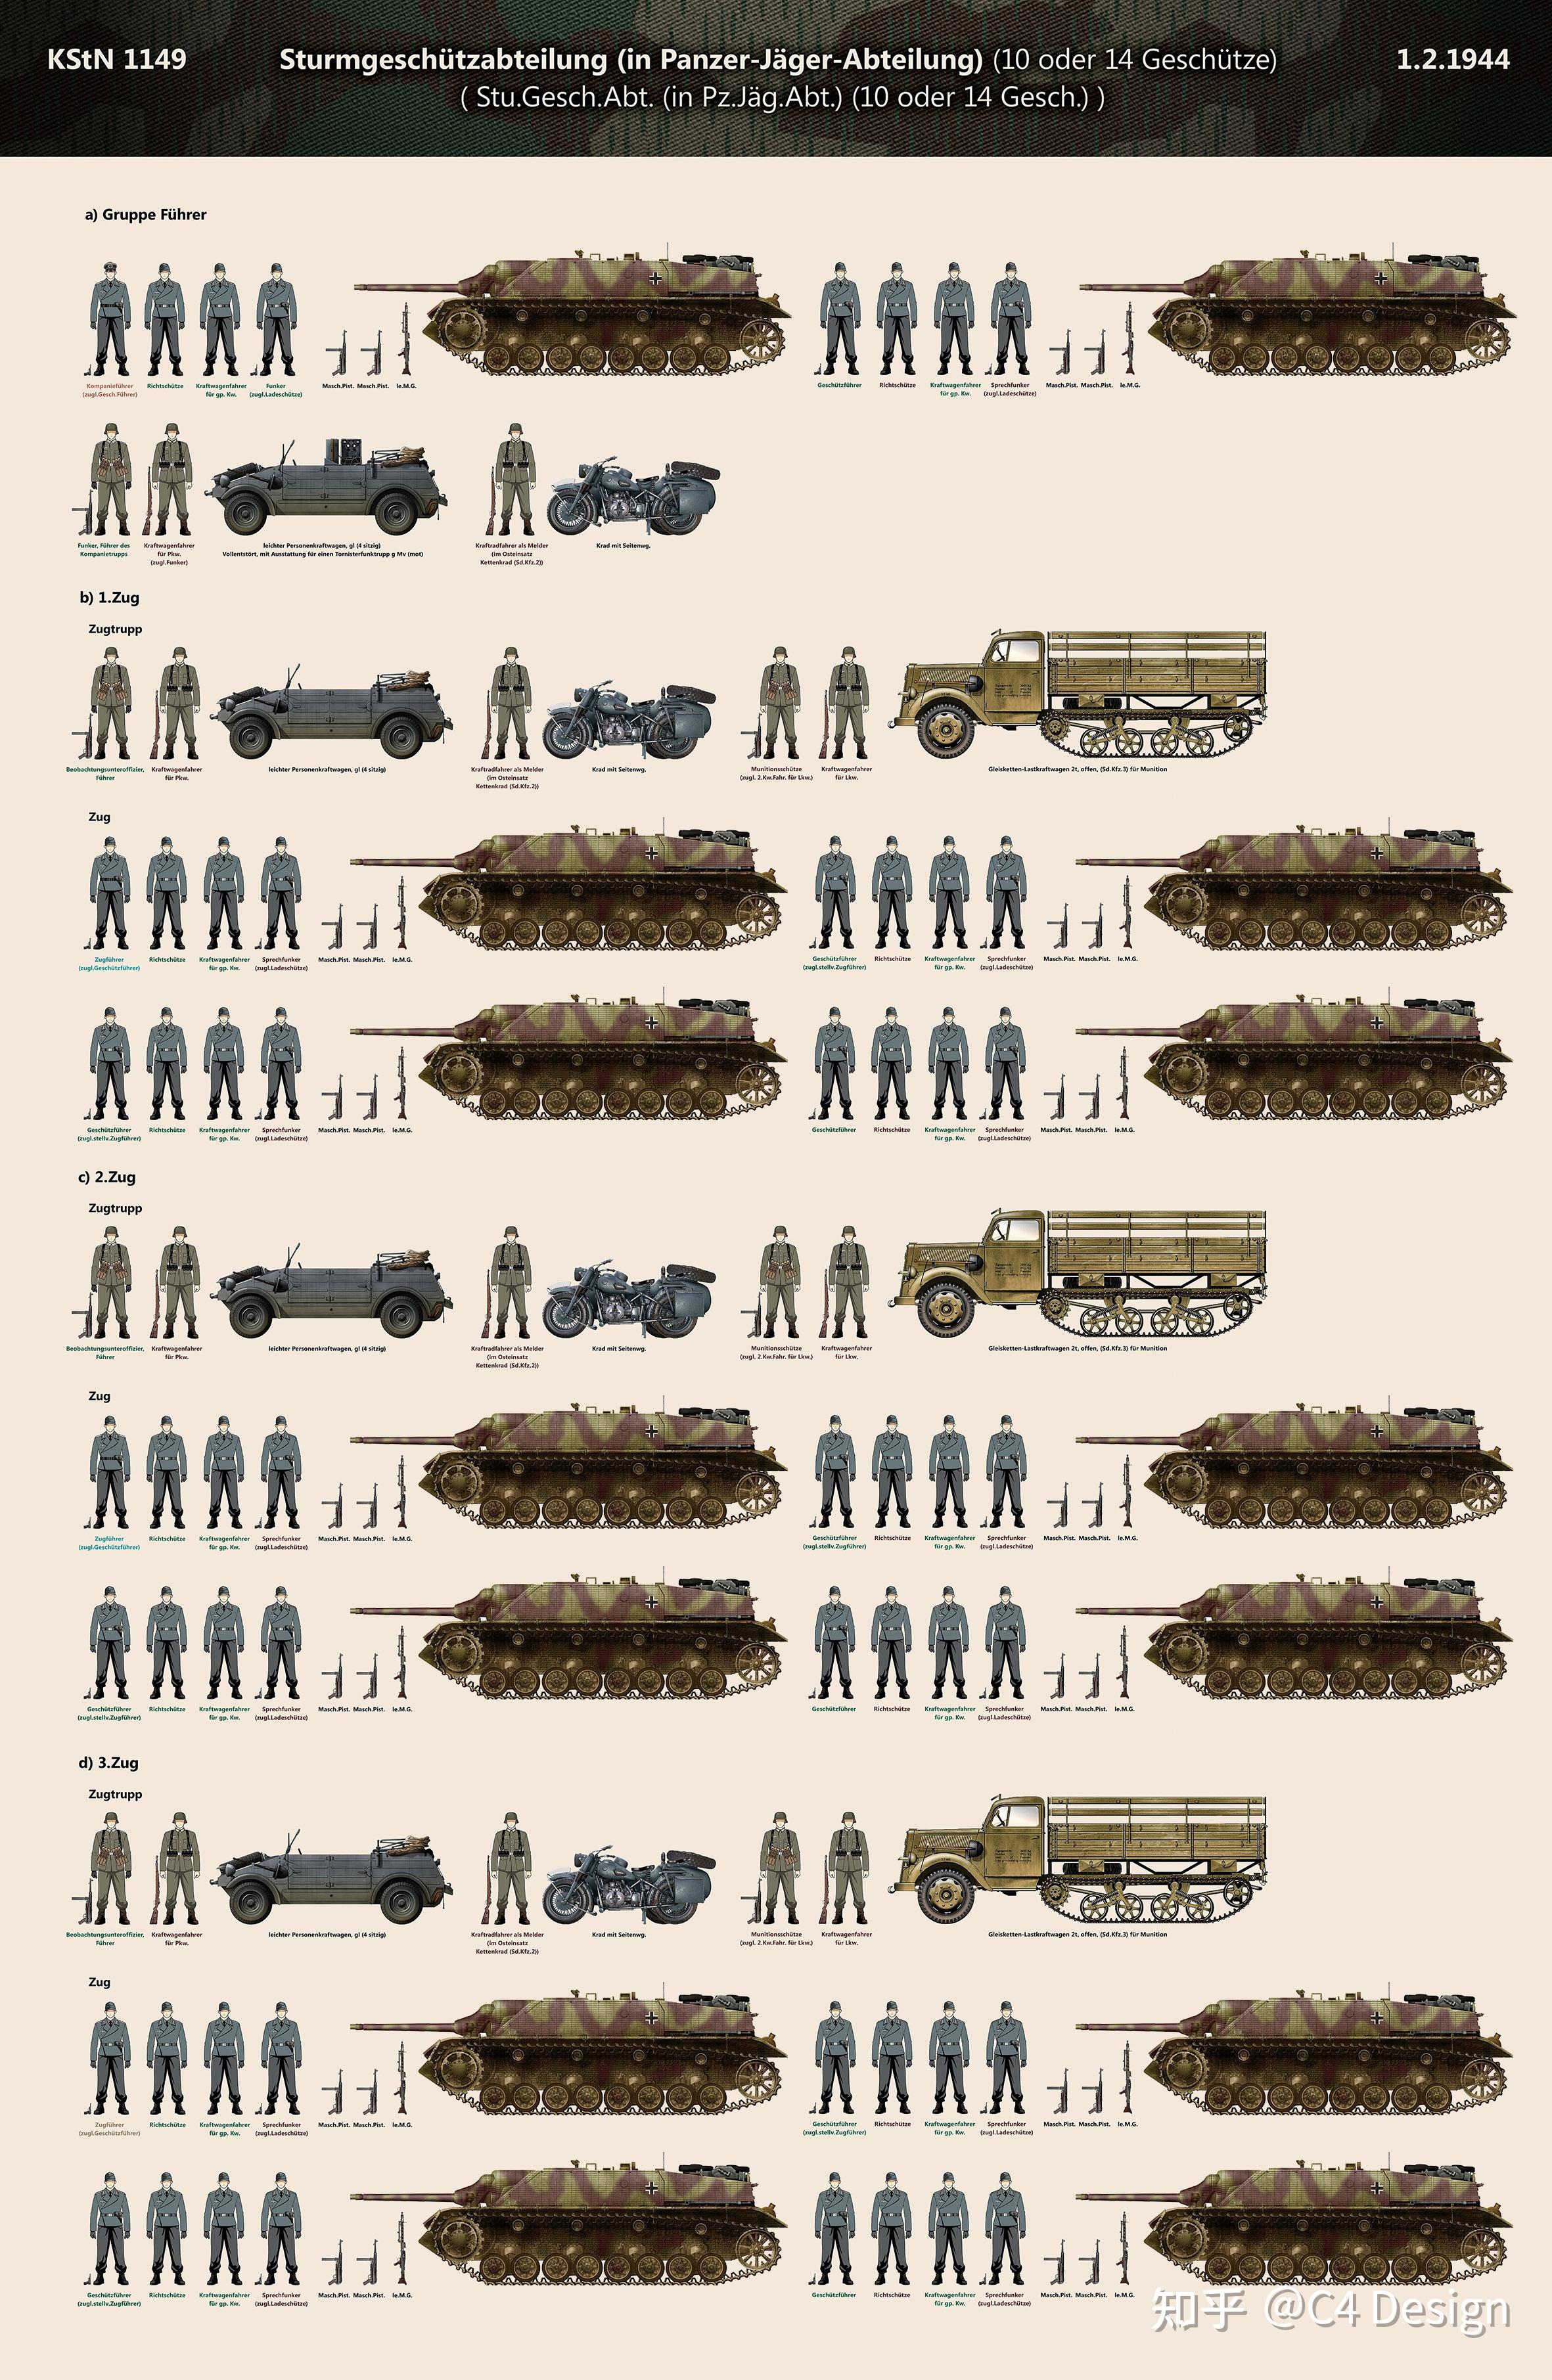 装甲师,装甲掷弹兵师就没有这么复杂了,因为坦克歼击营装备较统一